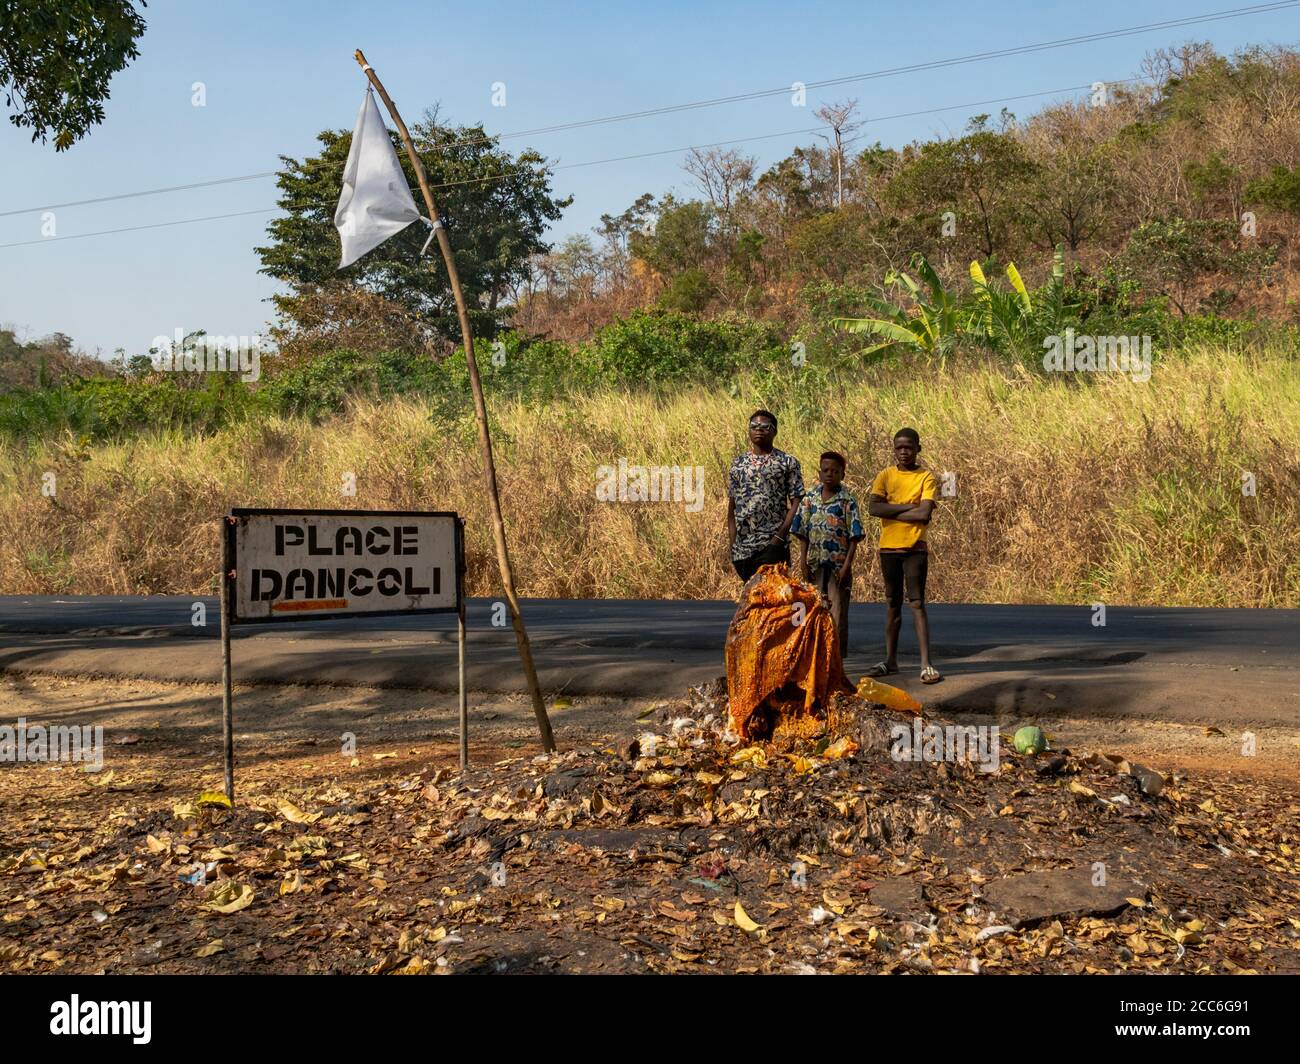 Dankoli/Benin - 01/01/2020 - drei unbekannte Männer betrachten die Voodoo-Zeremonie. Stockfoto